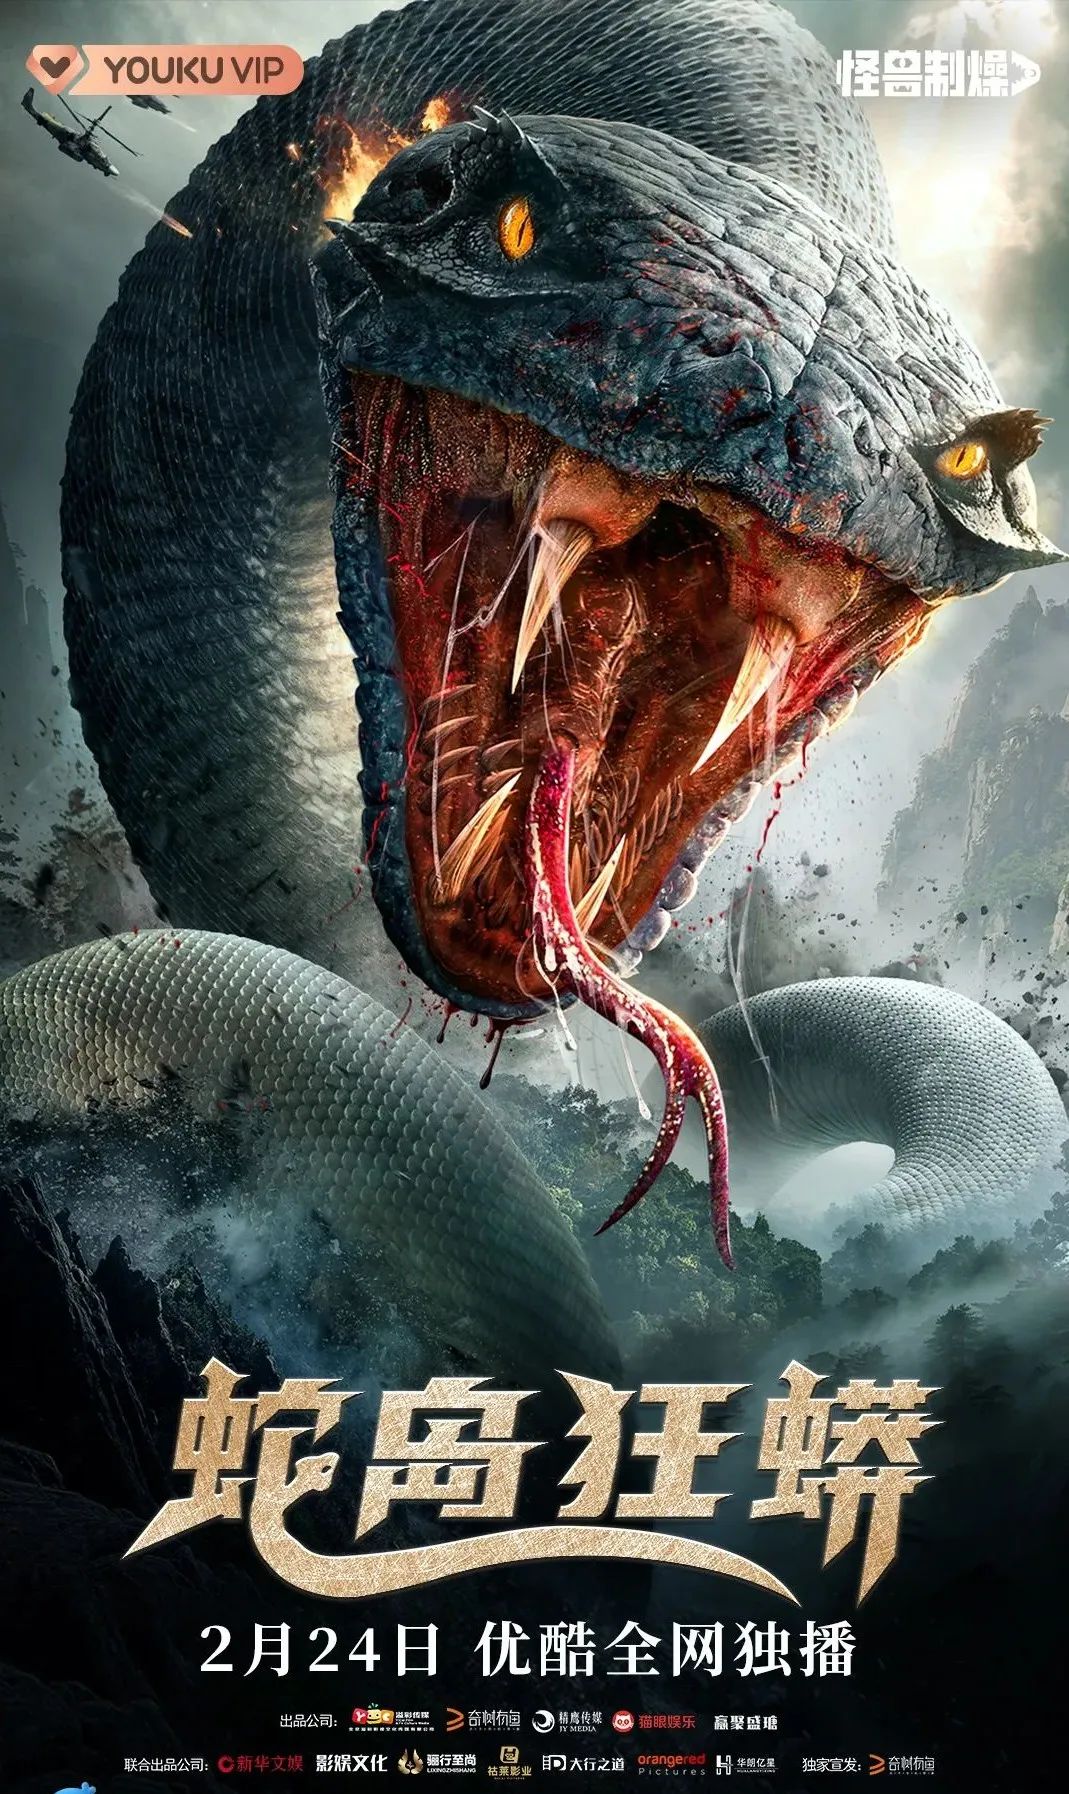 巨蟒复仇揭露人性弱点佛企出品电影蛇岛狂蟒定档2月24日